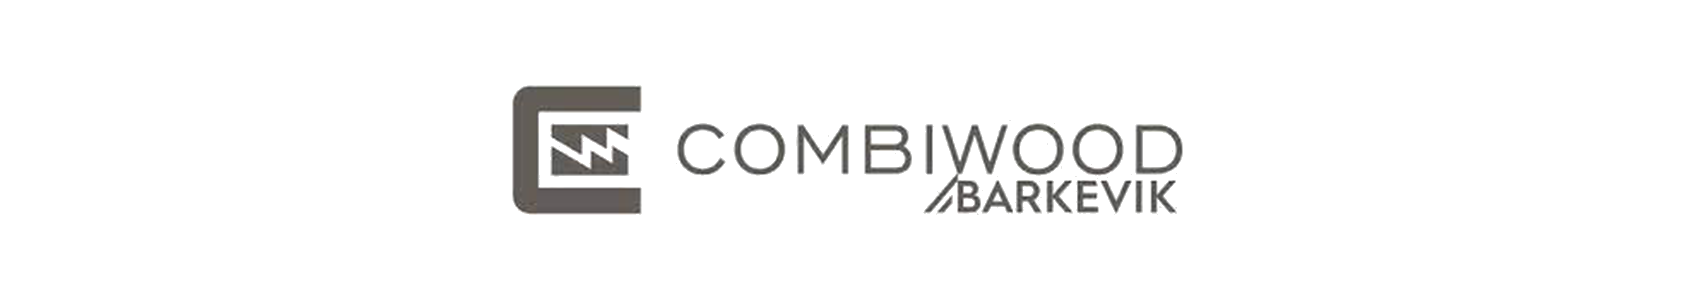 Combiwood Barevik logo banner